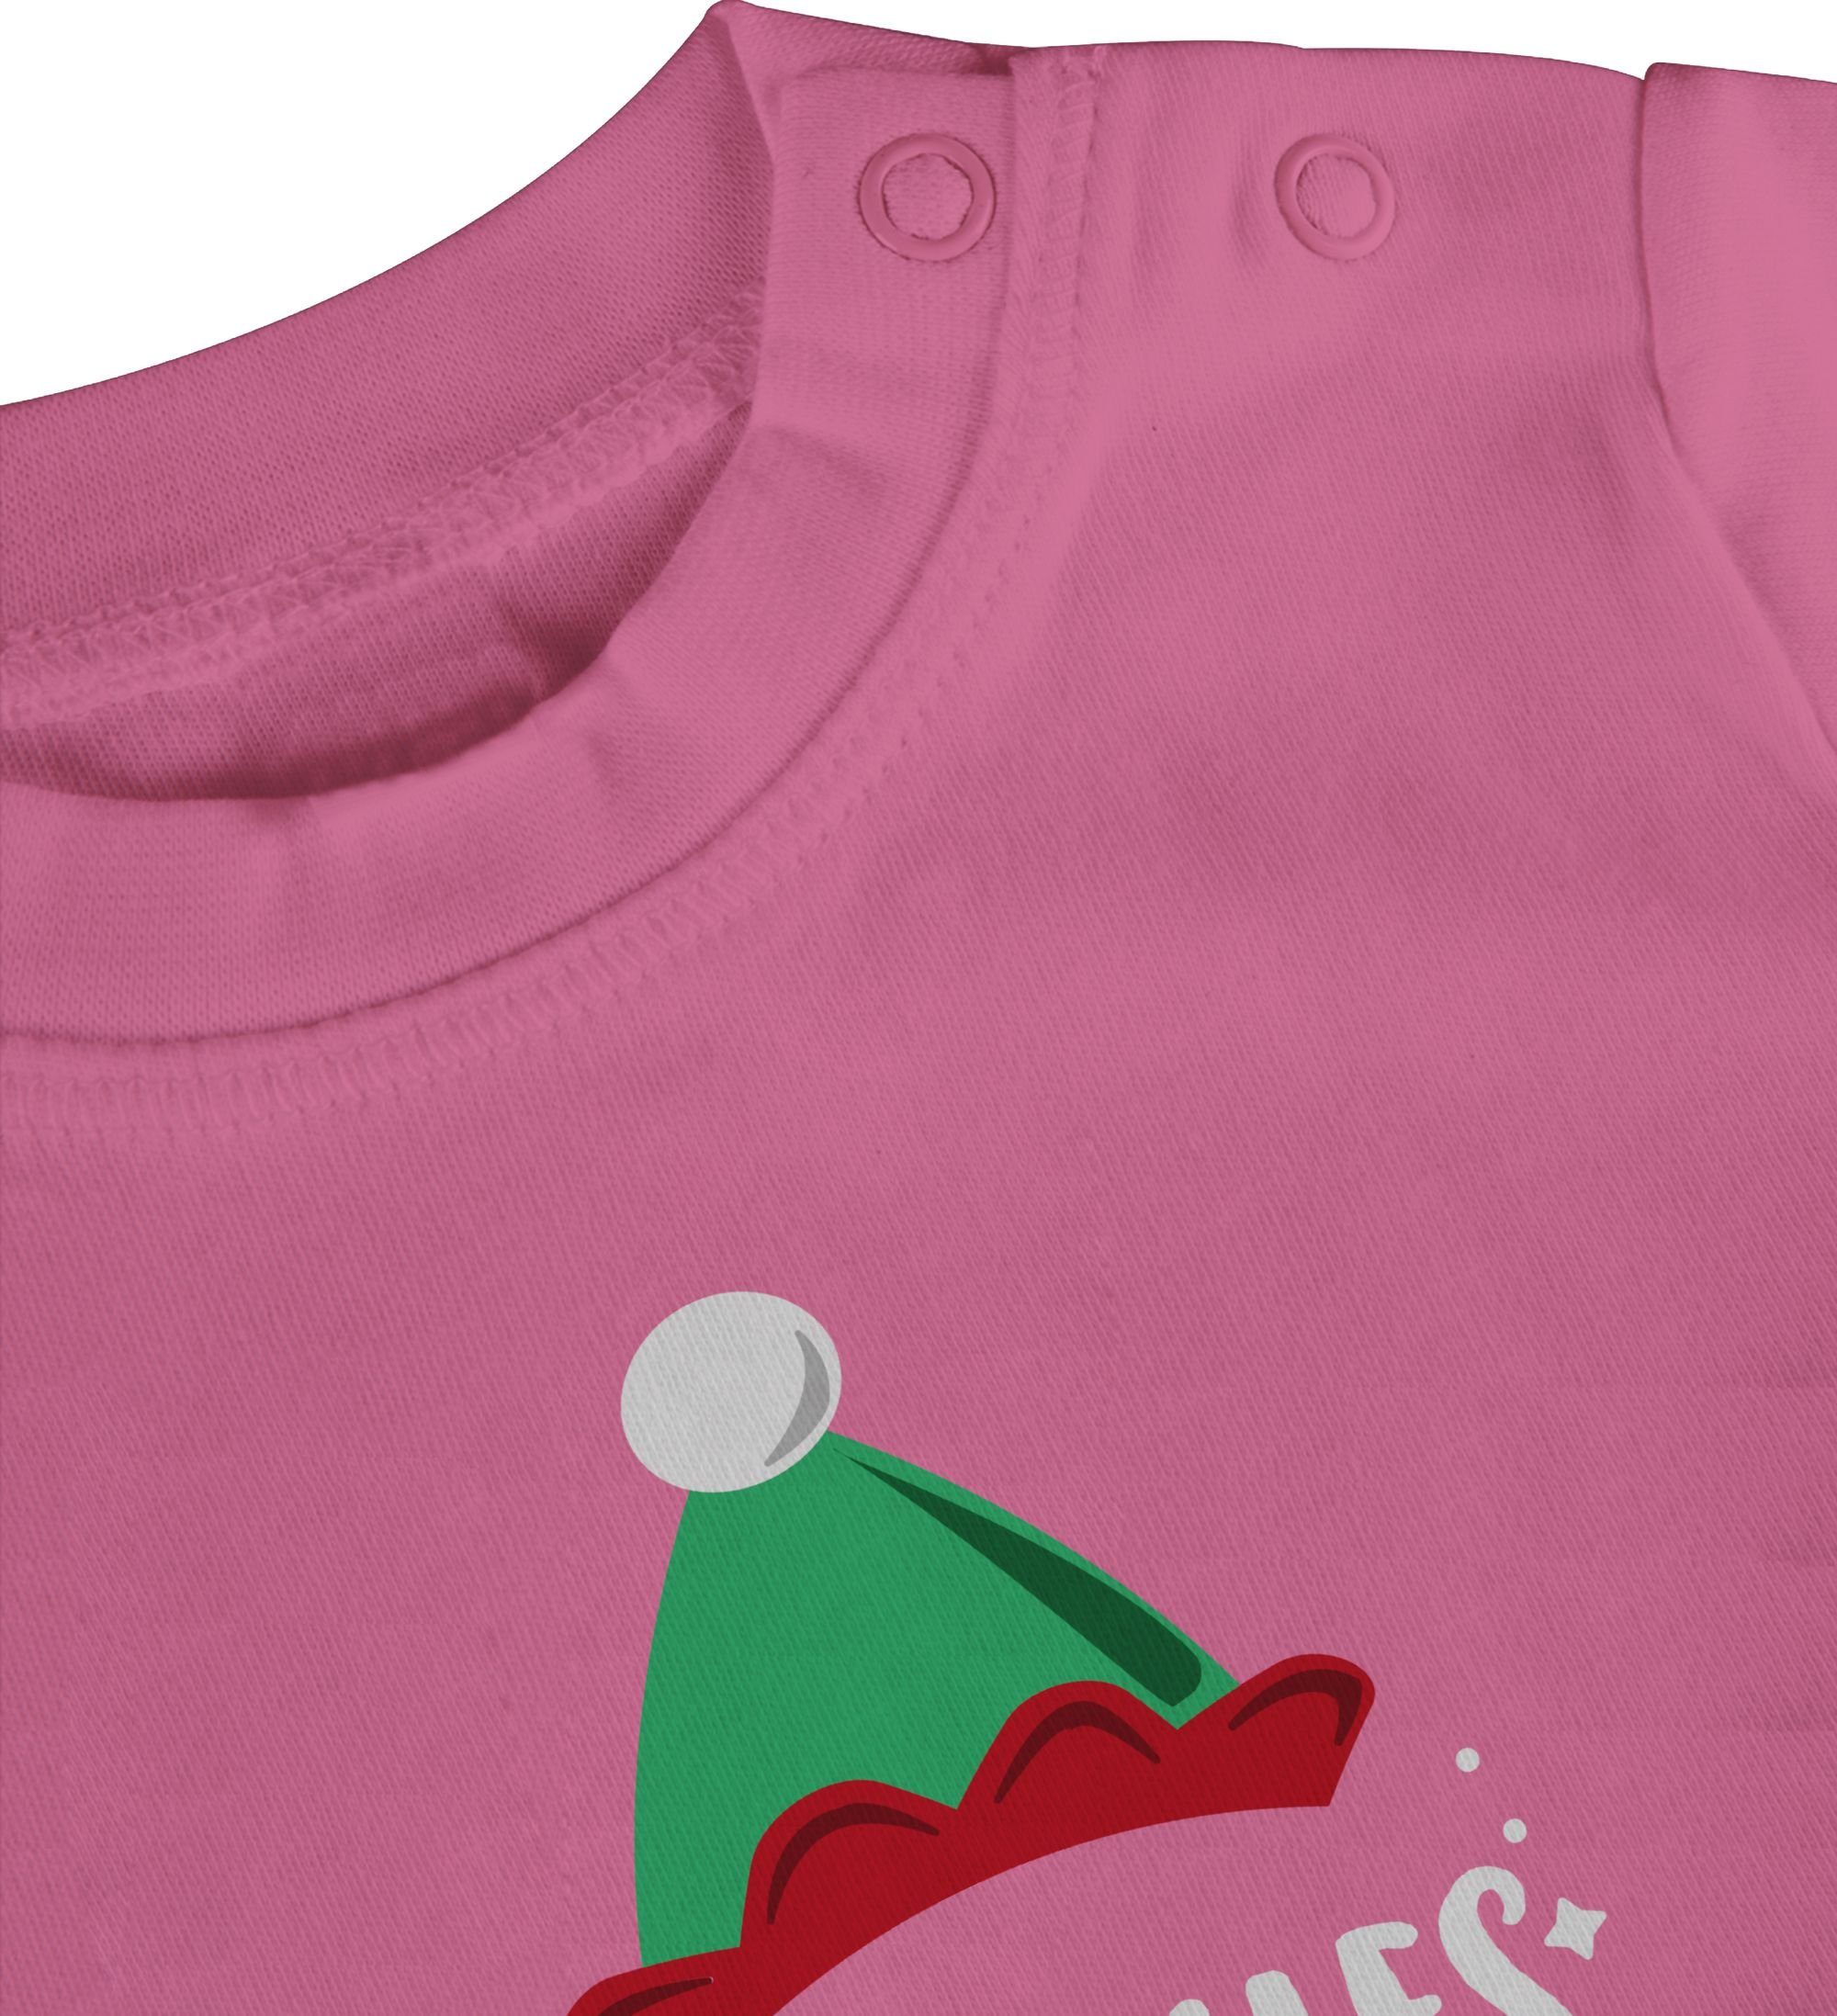 Shirtracer T-Shirt Weihnachten Aushilfs-Elf 1 Pink Baby Weihnachten Kleidung